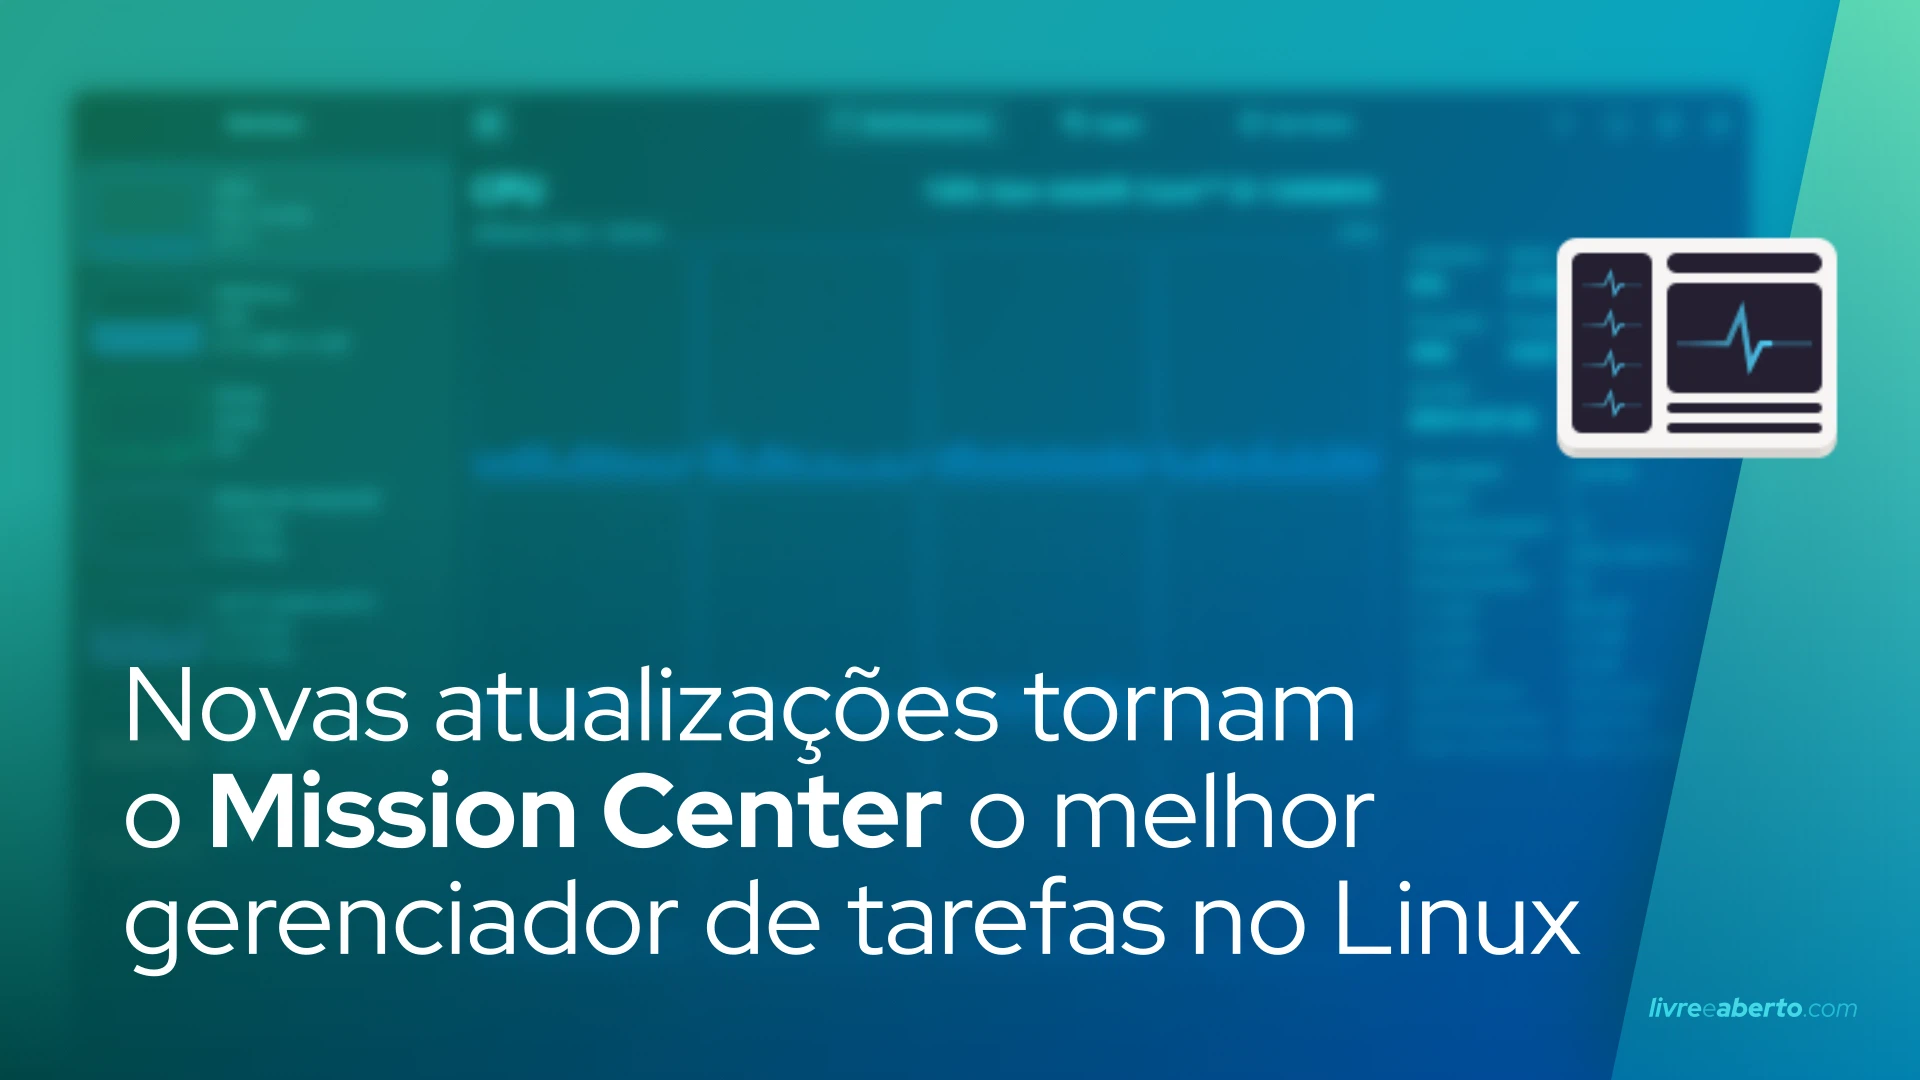 Novas atualizações tornam o Mission Center o melhor gerenciador de tarefas para desktop Linux